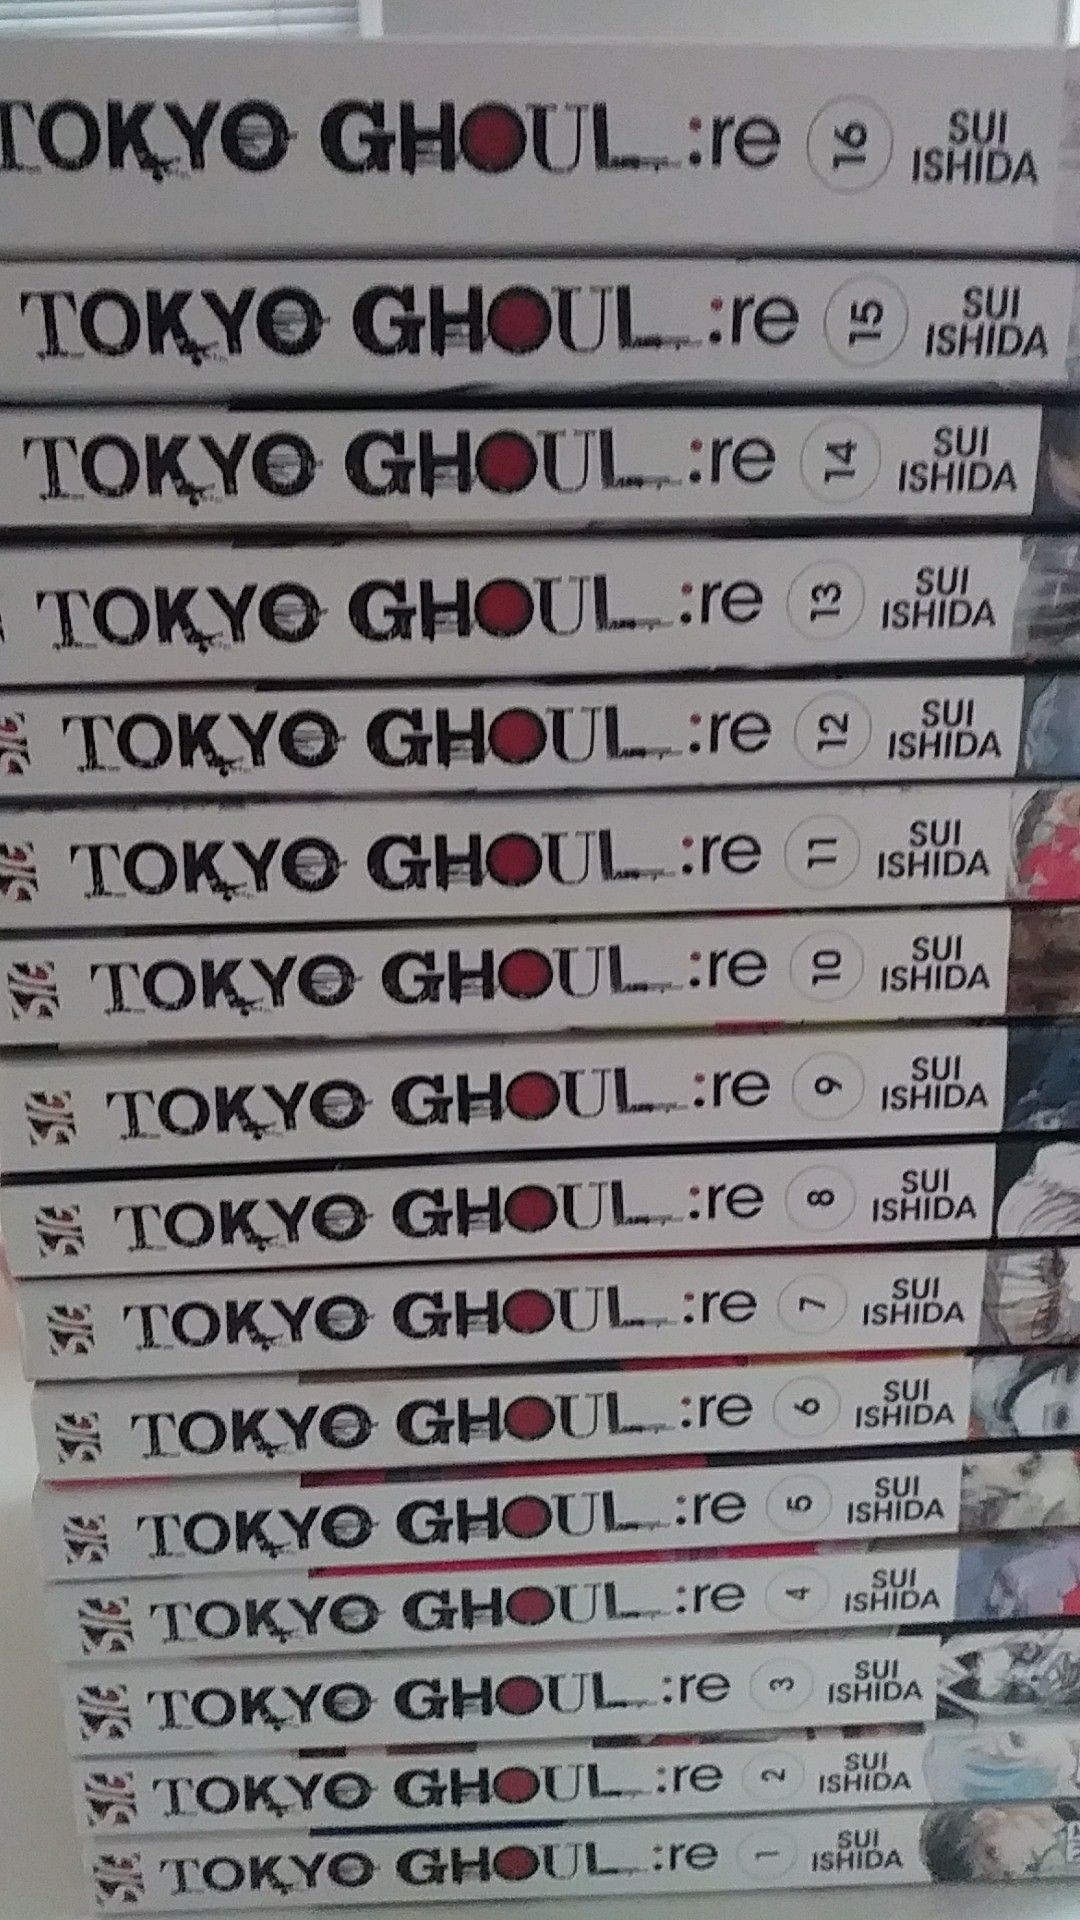 Tokyo Ghoul re